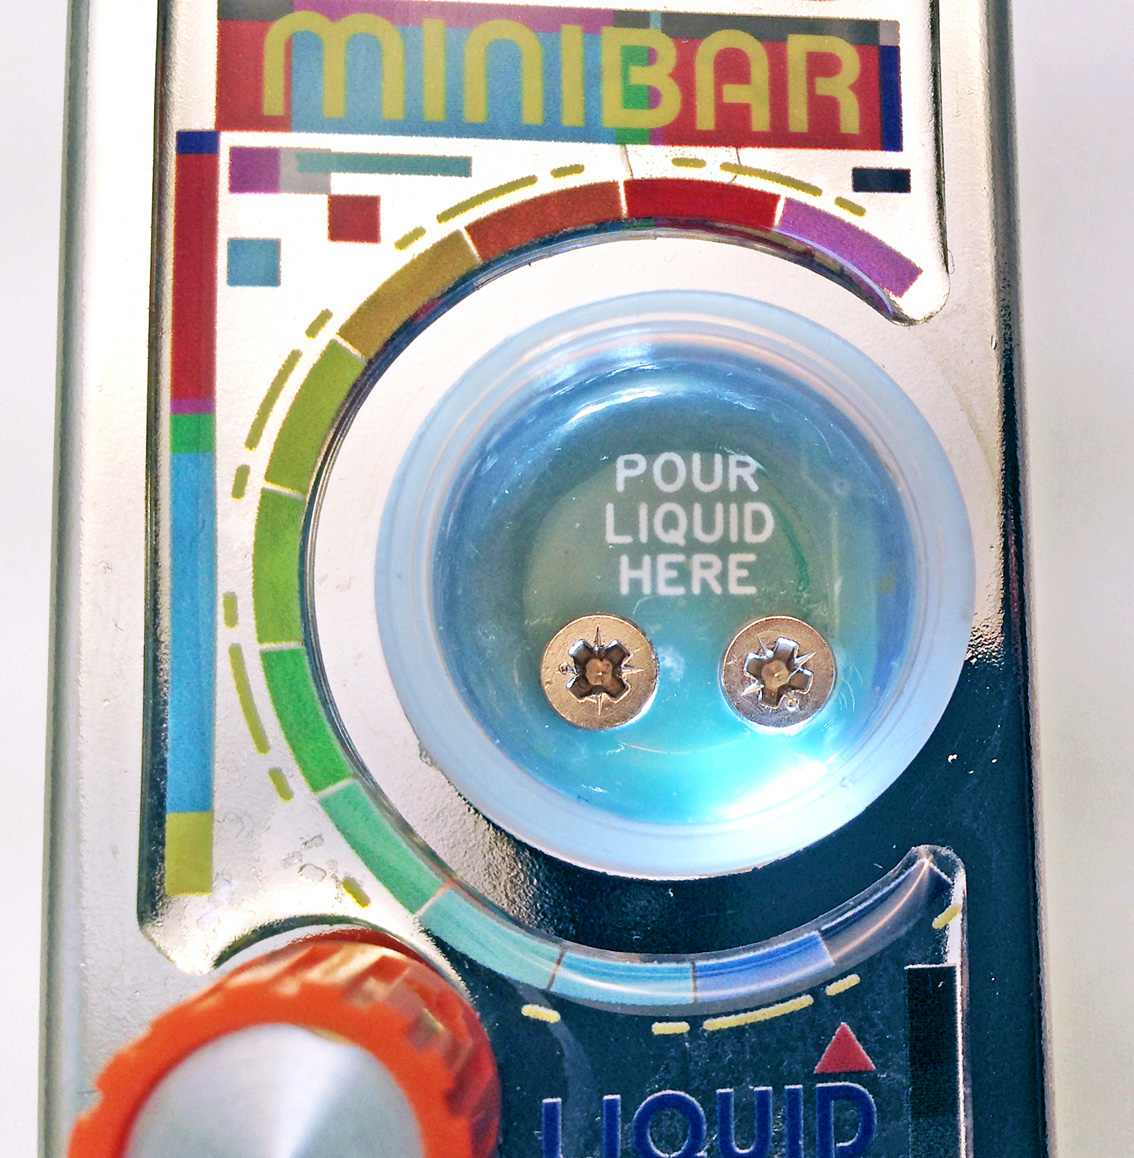 Minibar Liquid Analyser Overdrive, distortion & fuzz effect pedal